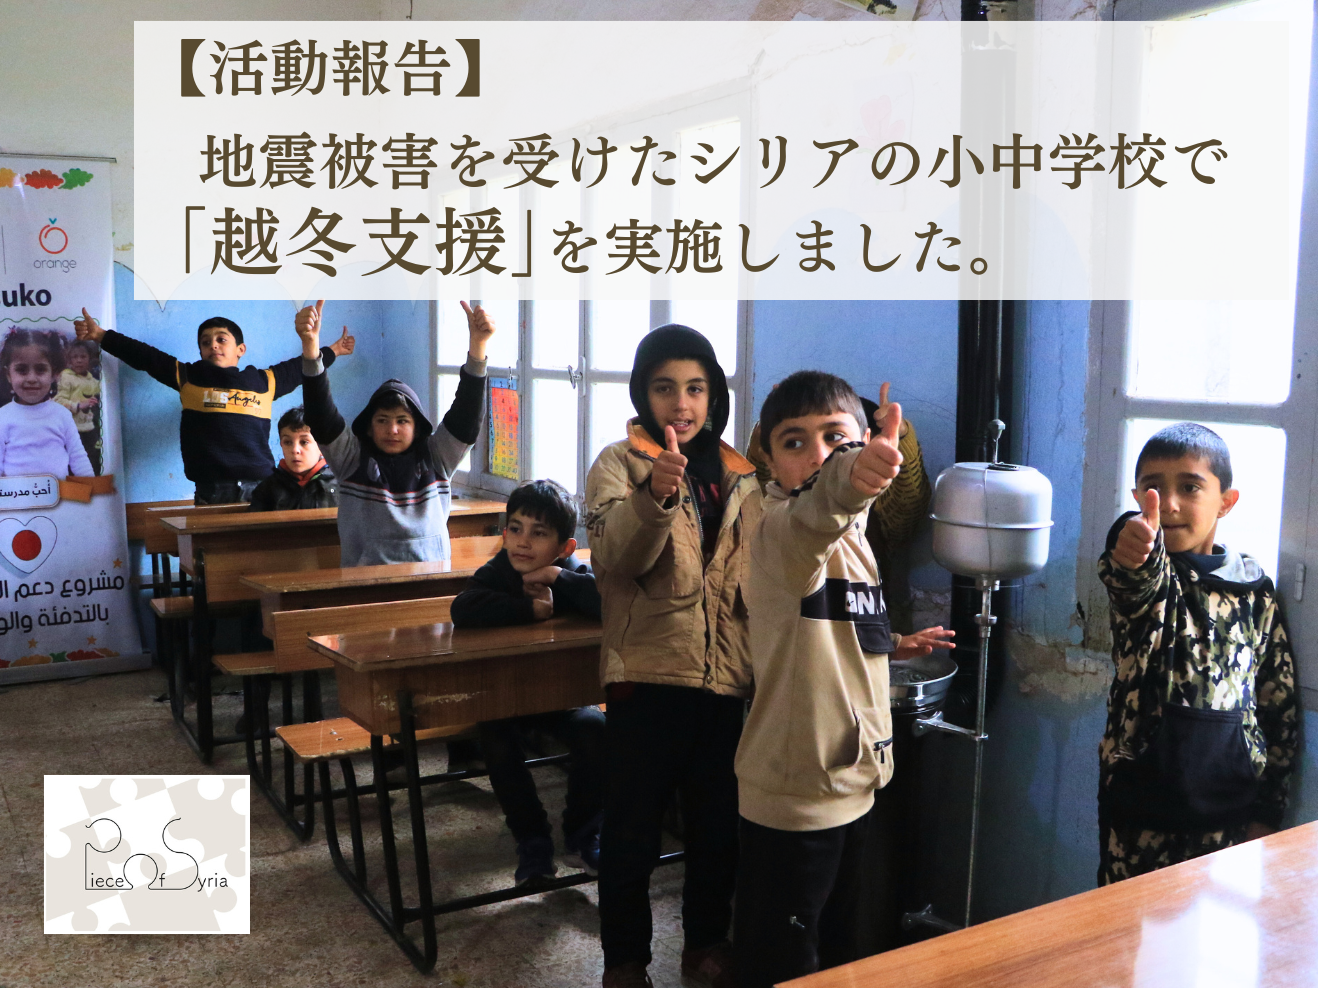 【活動報告】地震被害を受けたシリアの小中学校で「越冬支援」を実施しました